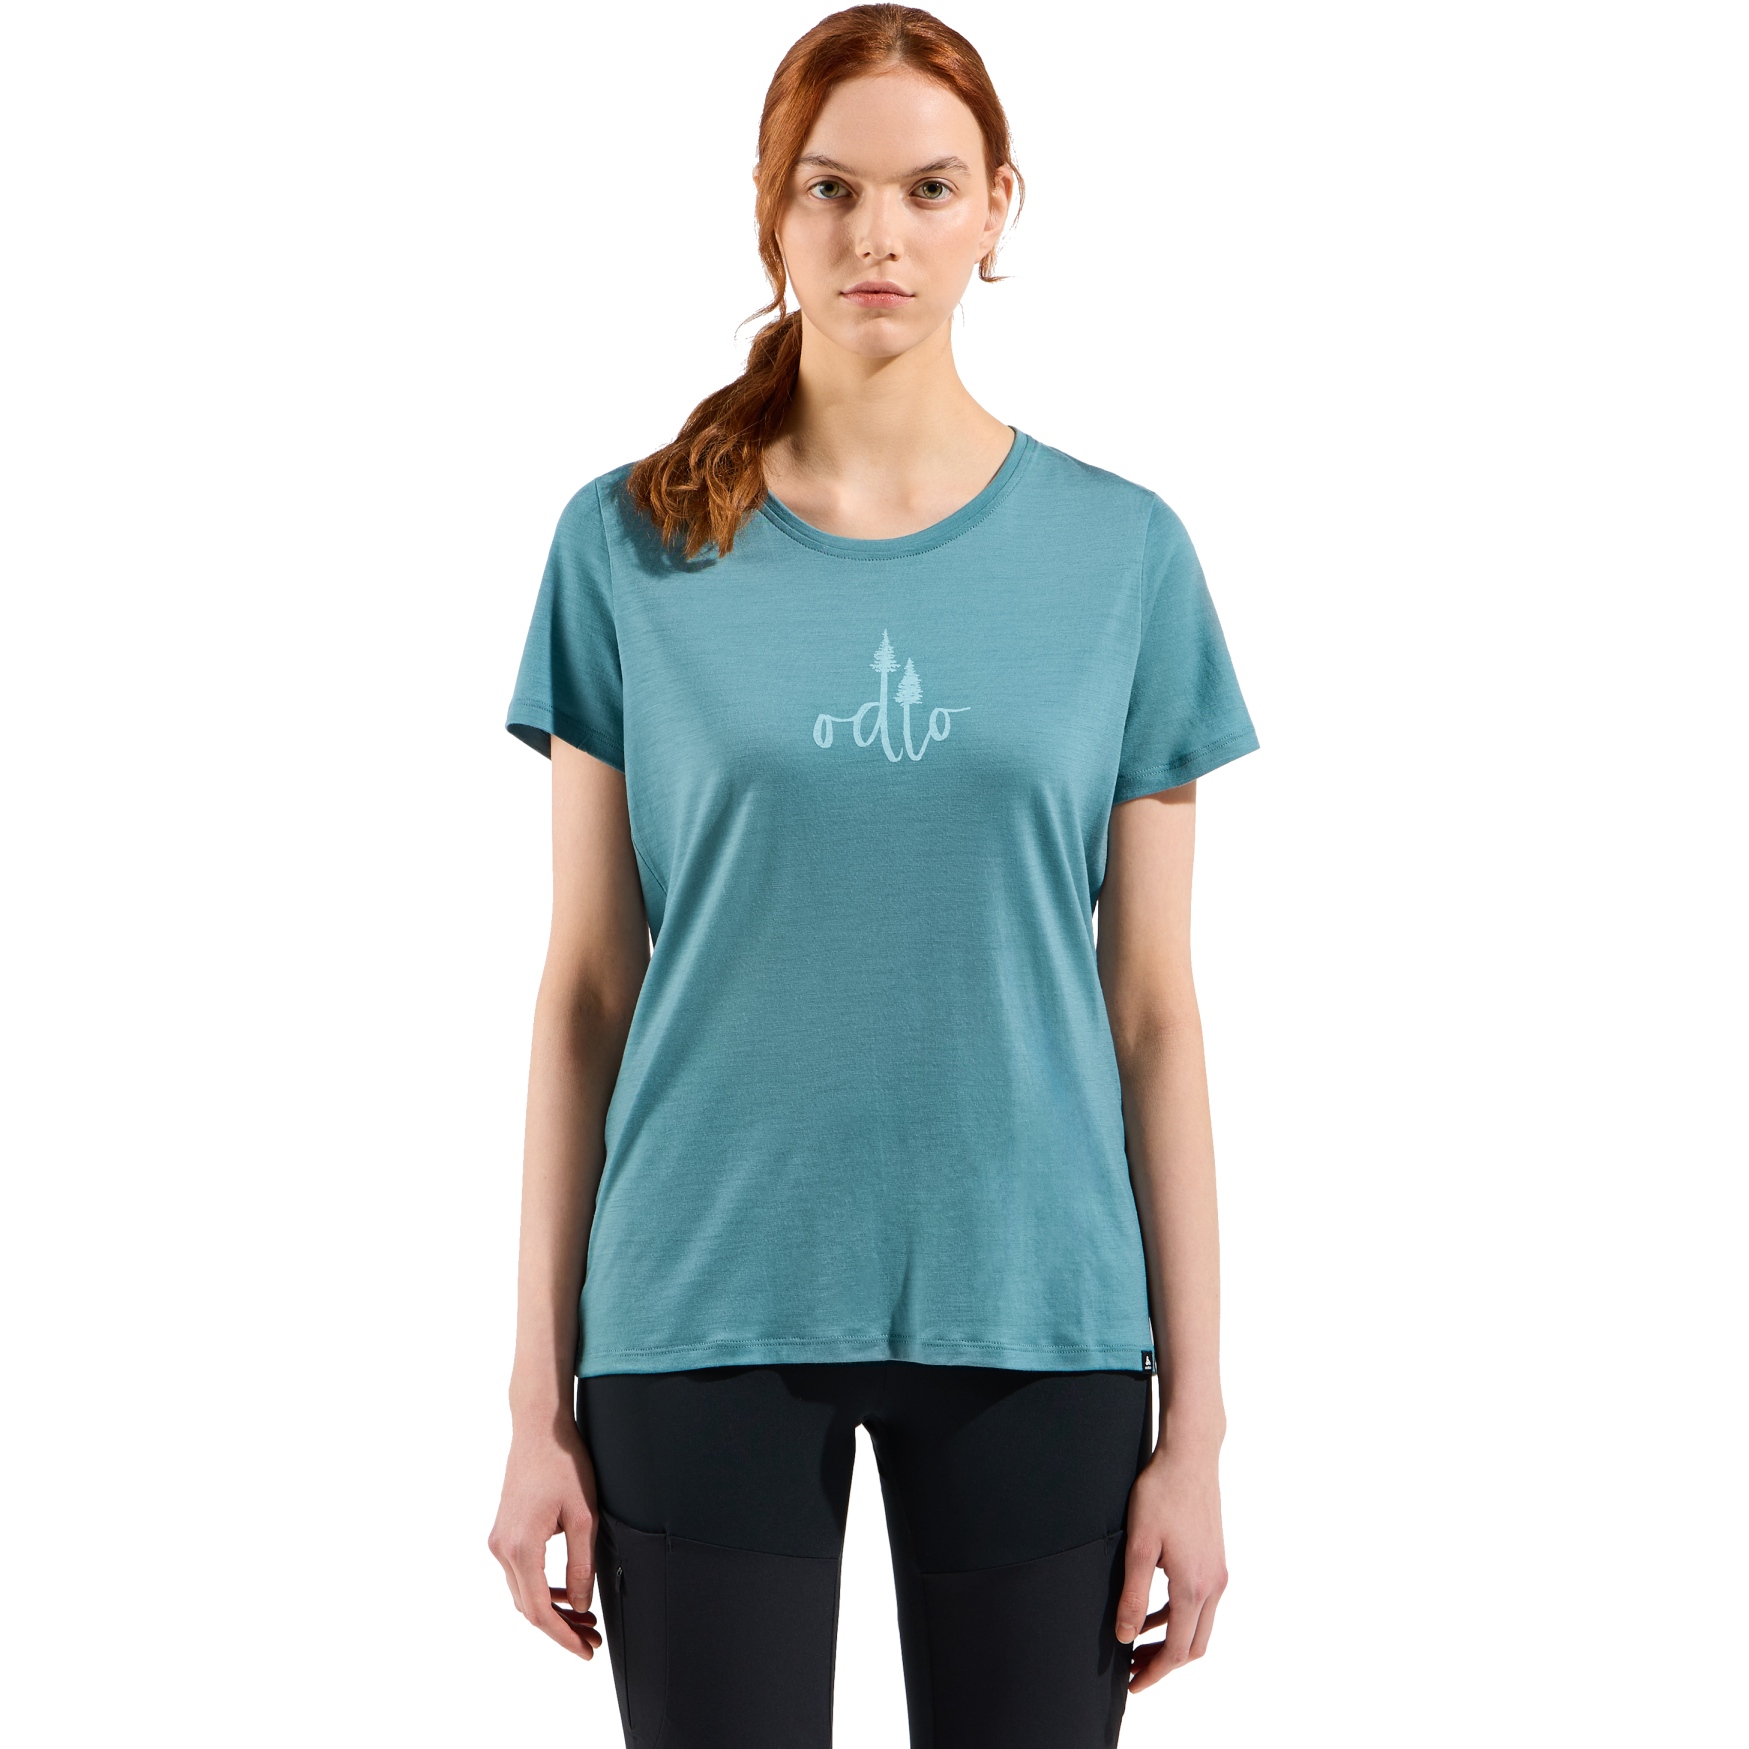 Produktbild von Odlo Ascent Merino 160 T-Shirt mit Baum-Logo Damen - arctic